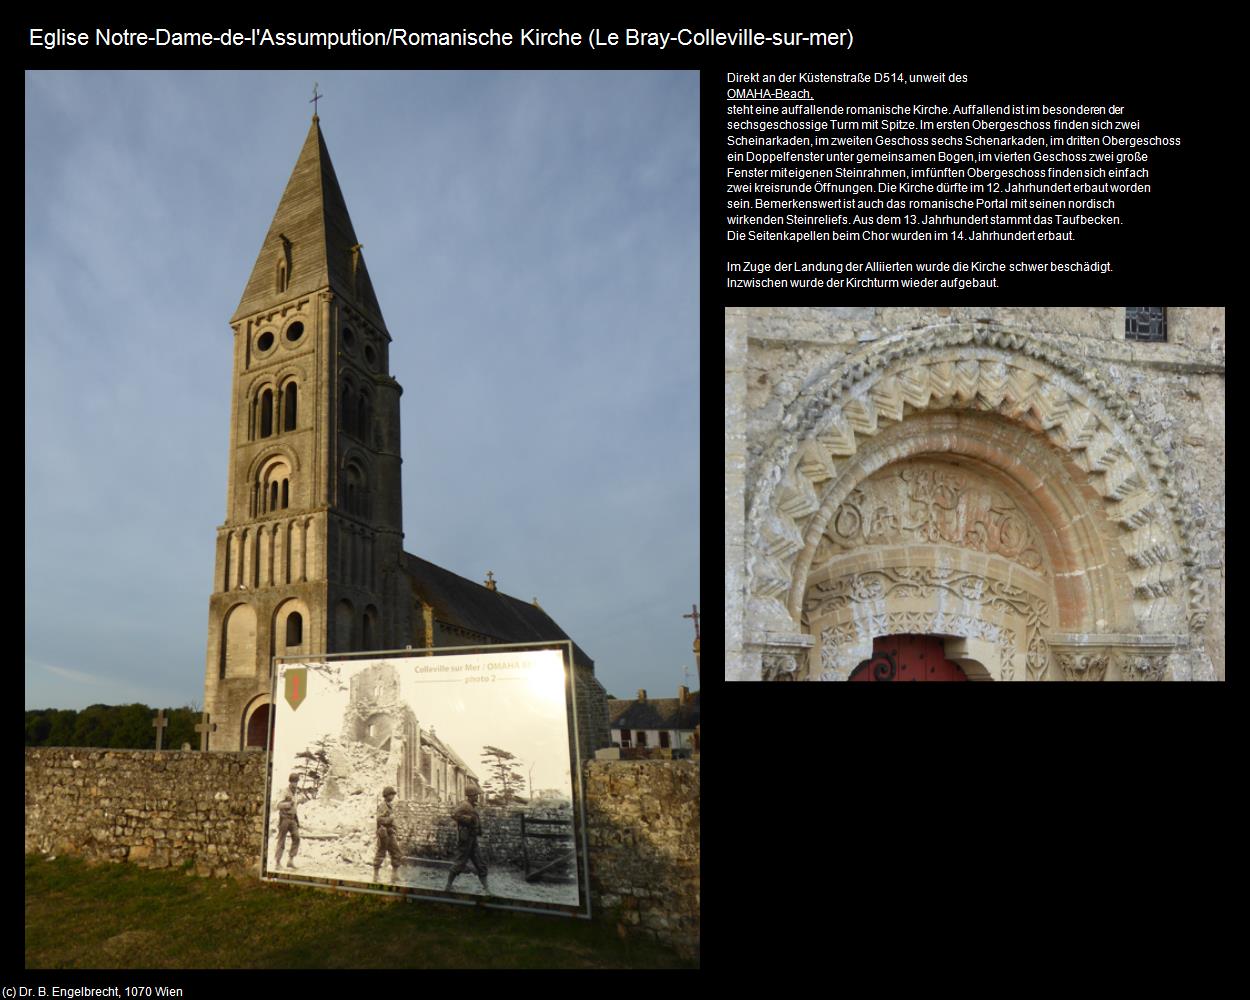 Eglise Notre-Dame-de-l'Assumpution (Le Bray (FR-NOR)) in Kulturatlas-FRANKREICH(c)B.Engelbrecht